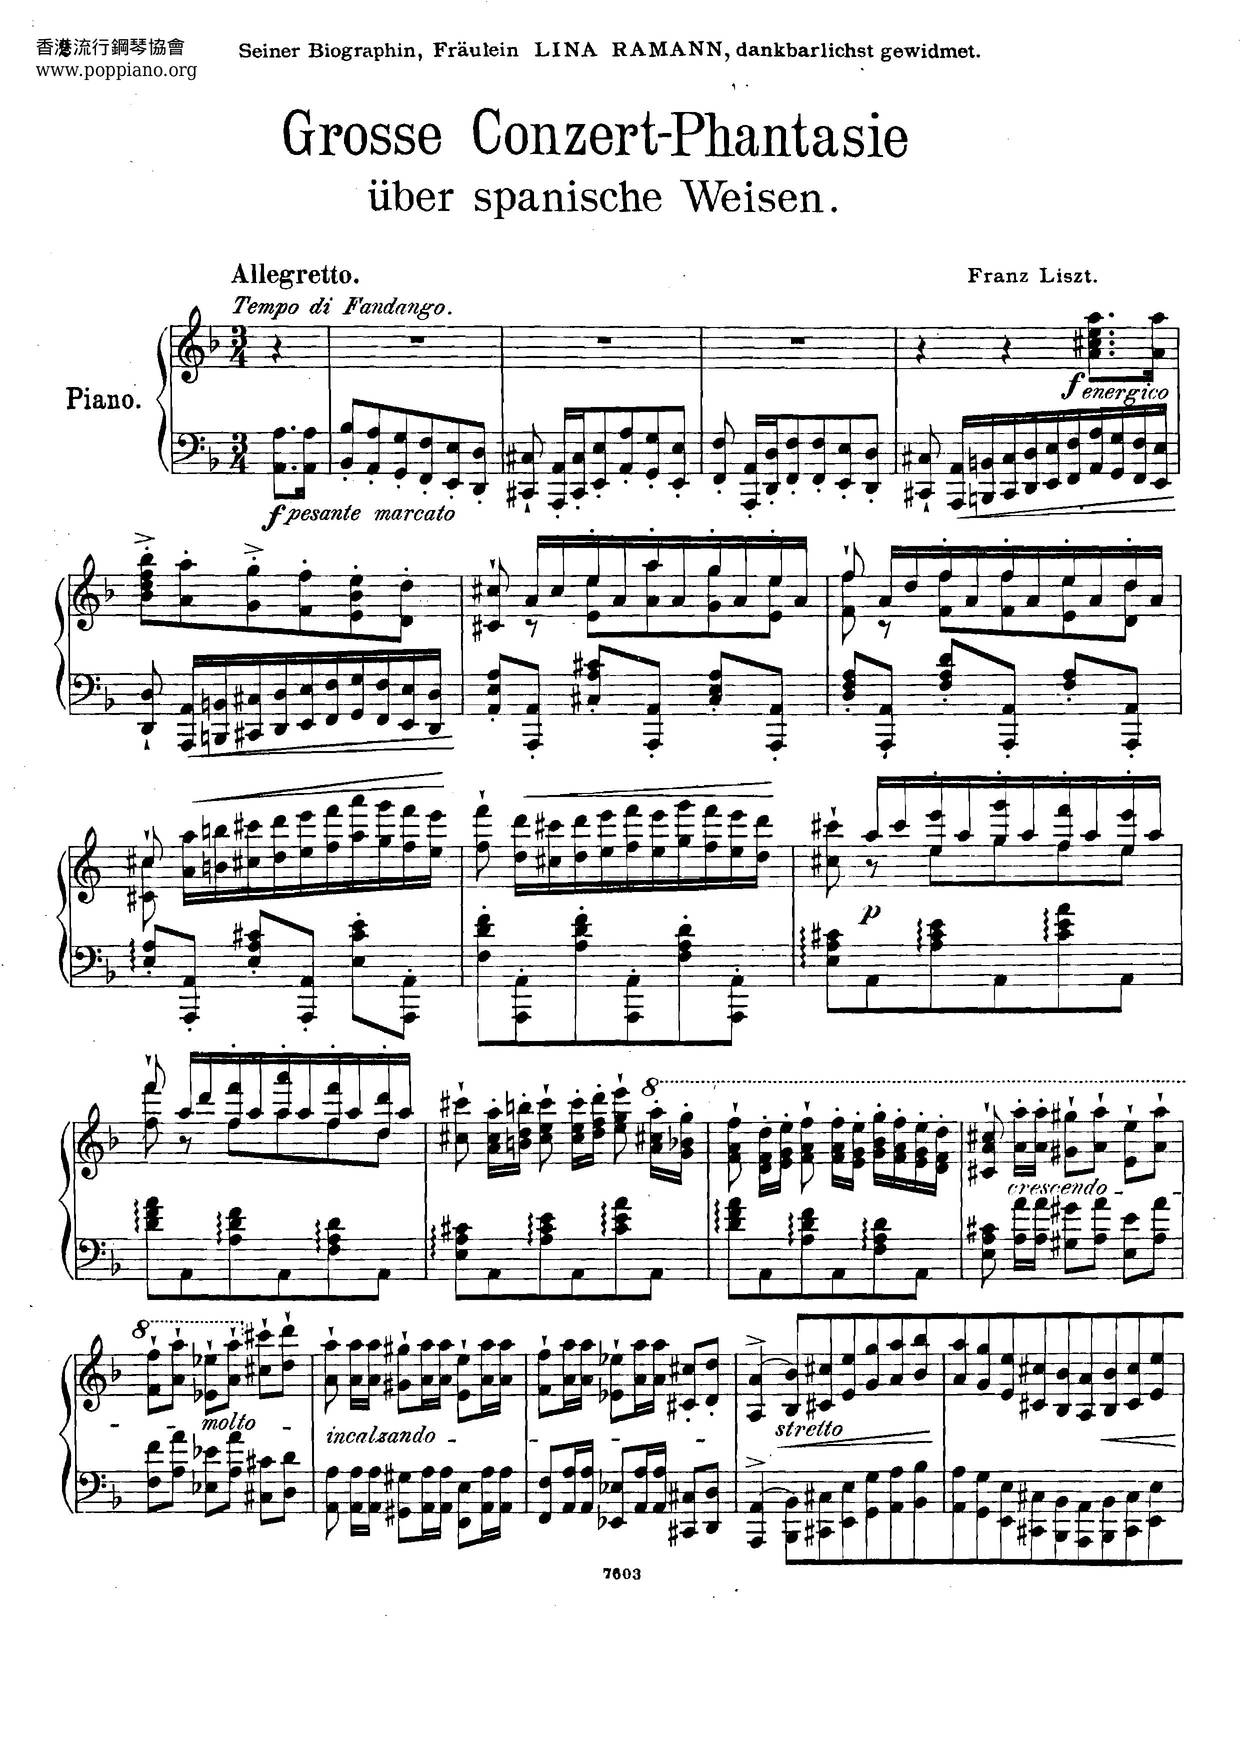 Grosse Konzertfantasie Über Spanische Weisen, S.253 Score